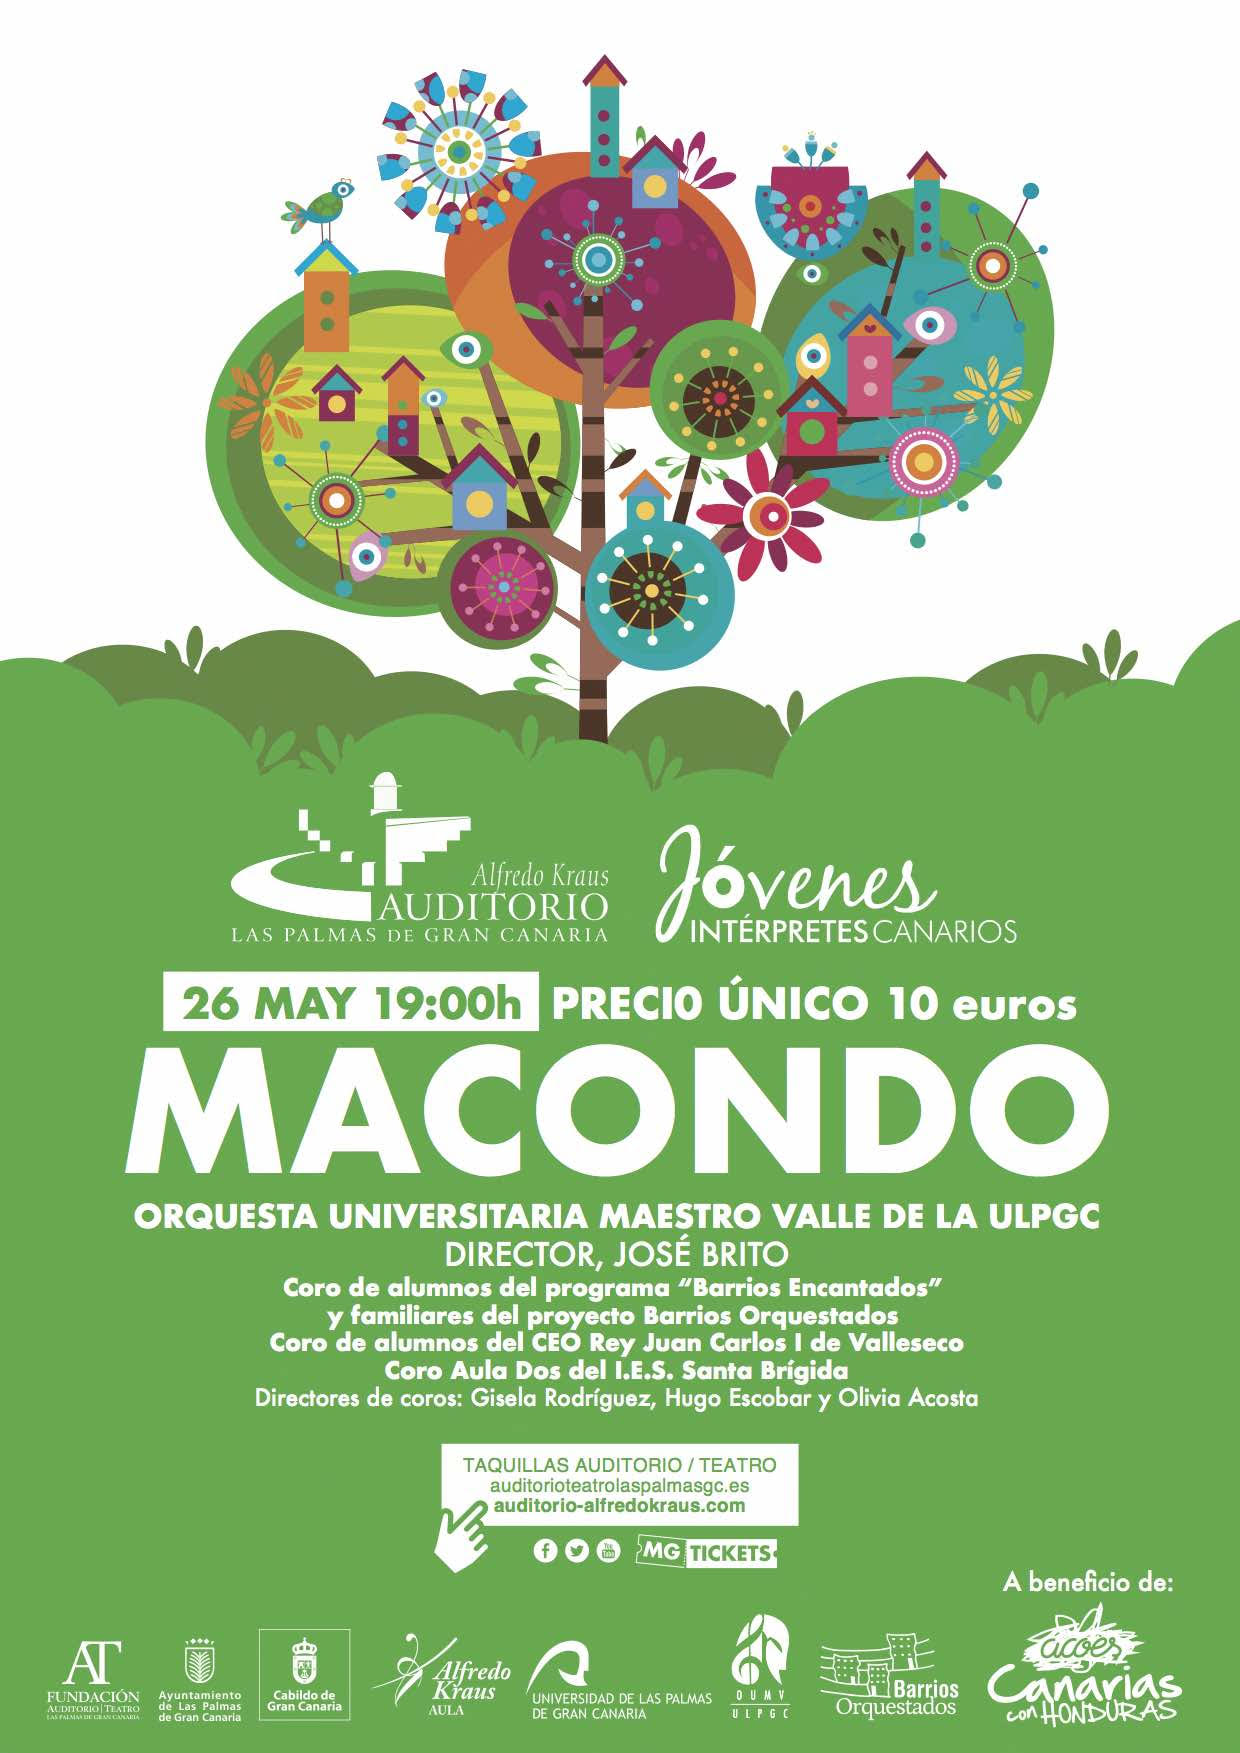 Concierto “MACONDO” con la Orquesta Universitaria Maestro Valle de la ULPGC dirigido por José Brito